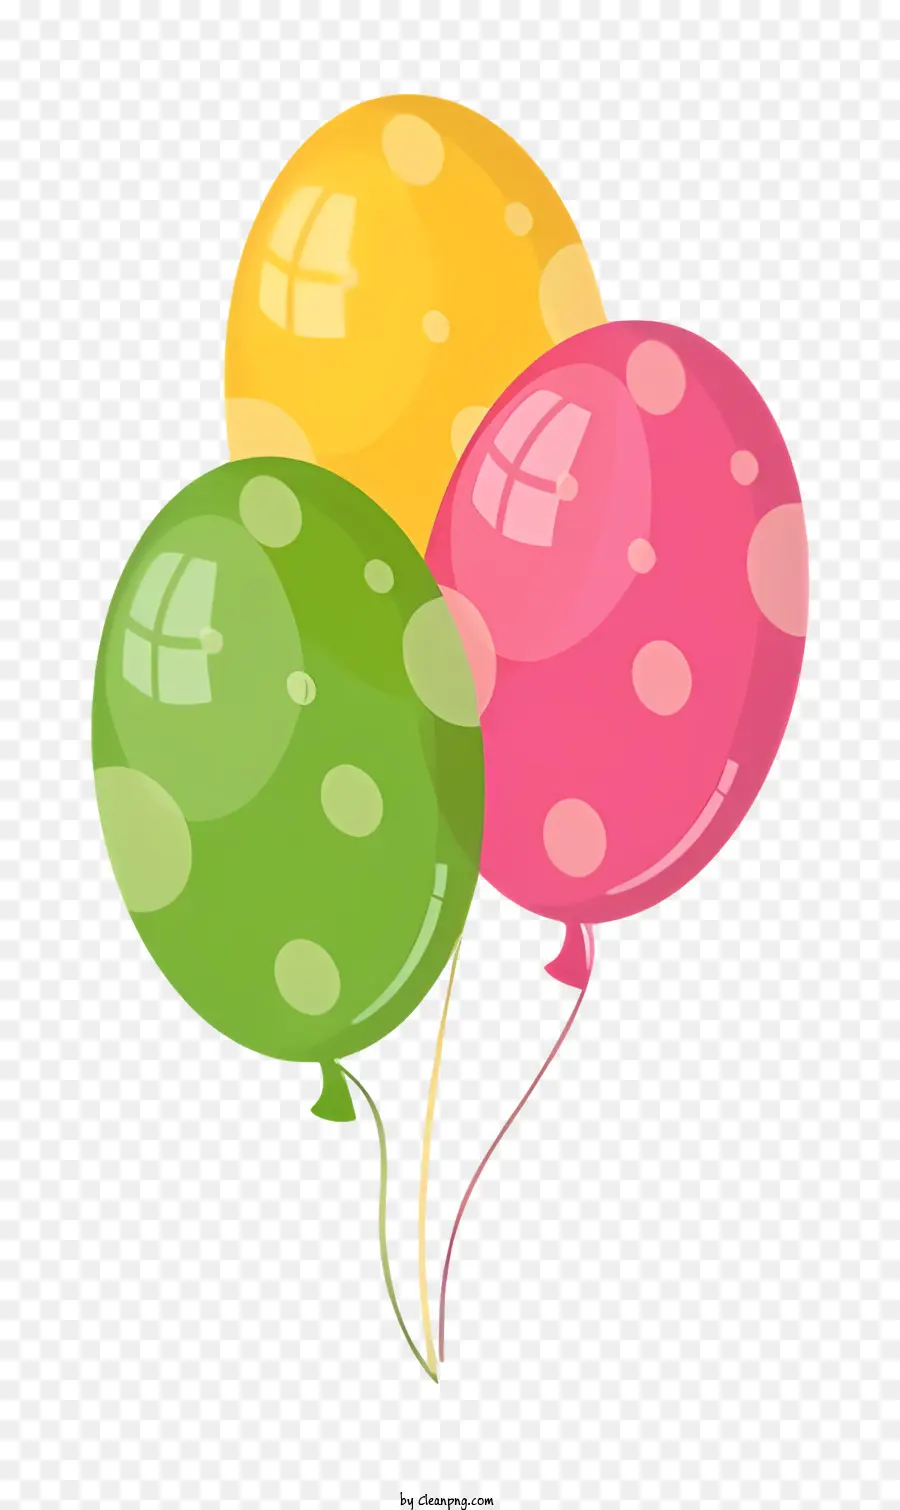 Luftballons farbenfrohe Luftballons Polka Dot -Luftballons schwimmende Luftballons gebundene Luftballons - Bunte Luftballons, die mit einer Schnur vor schwarzem Hintergrund gebunden sind